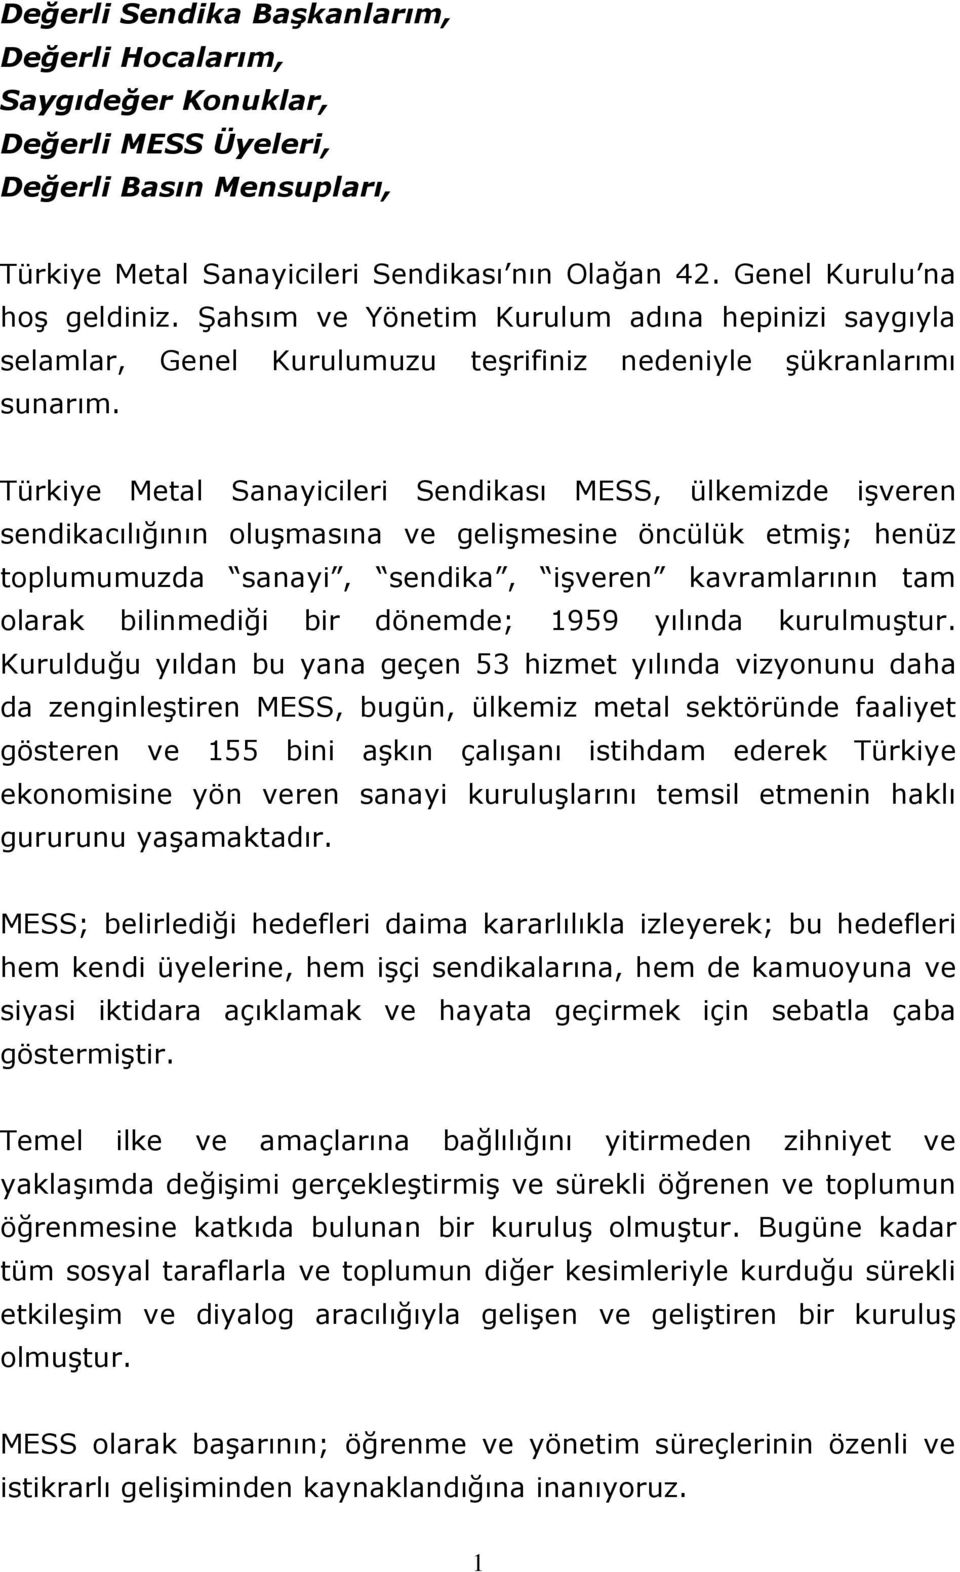 Türkiye Metal Sanayicileri Sendikası MESS, ülkemizde işveren sendikacılığının oluşmasına ve gelişmesine öncülük etmiş; henüz toplumumuzda sanayi, sendika, işveren kavramlarının tam olarak bilinmediği